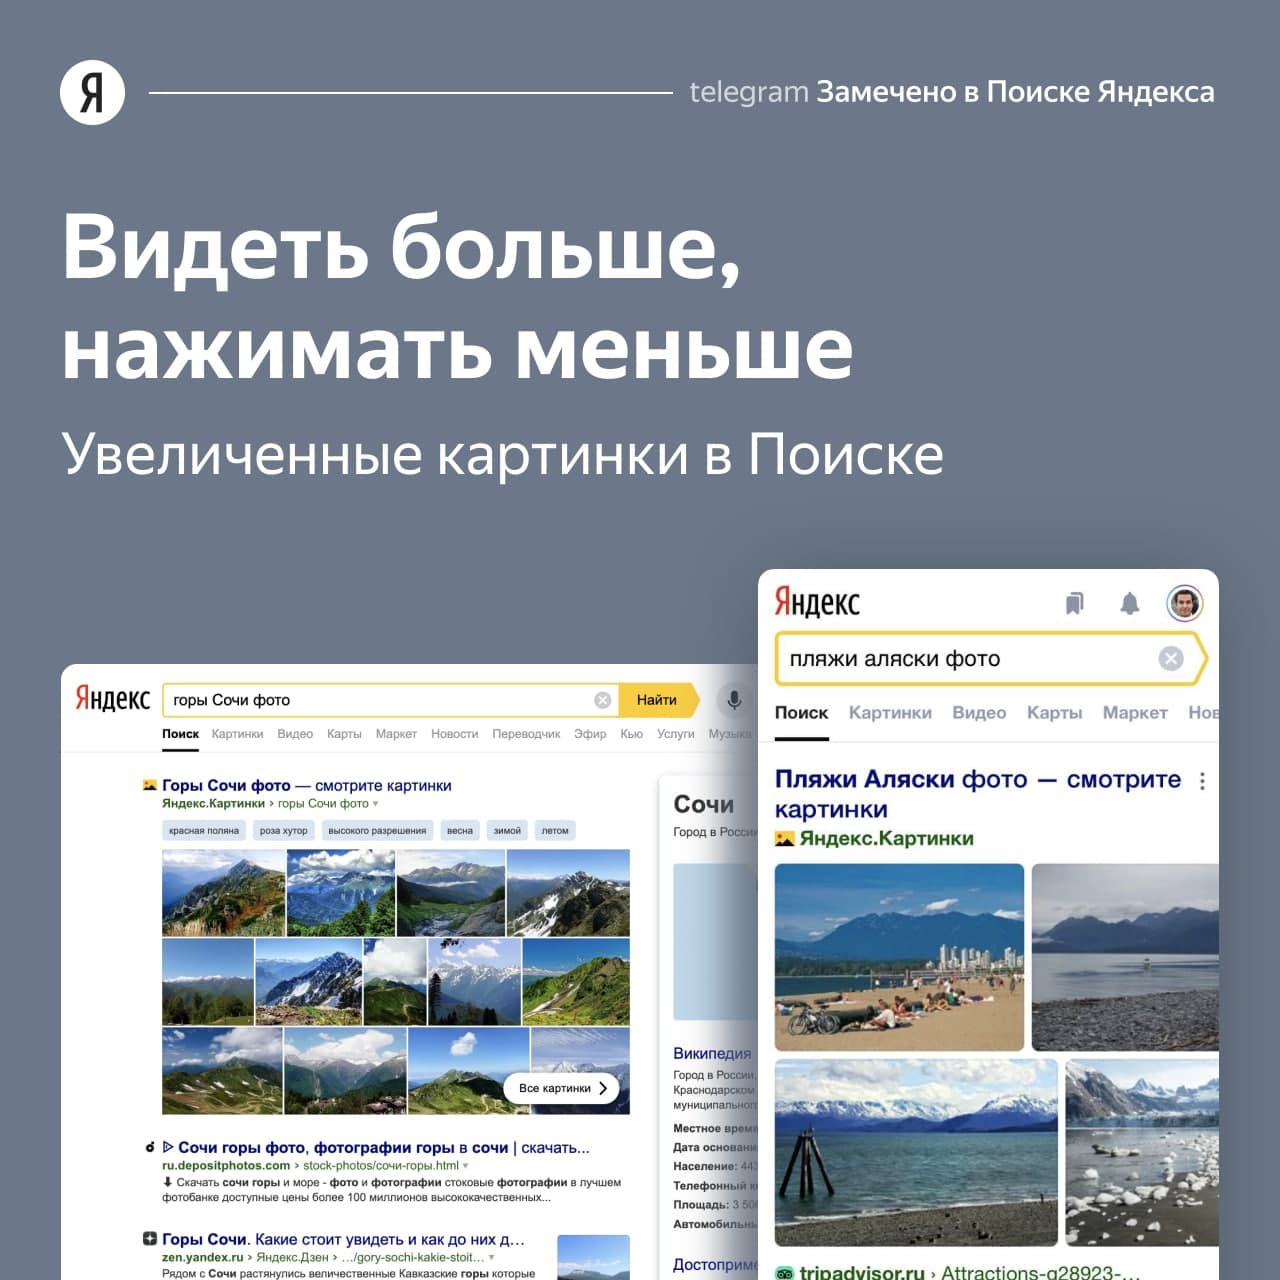 Увеличенные картинки в поиске Яндекса